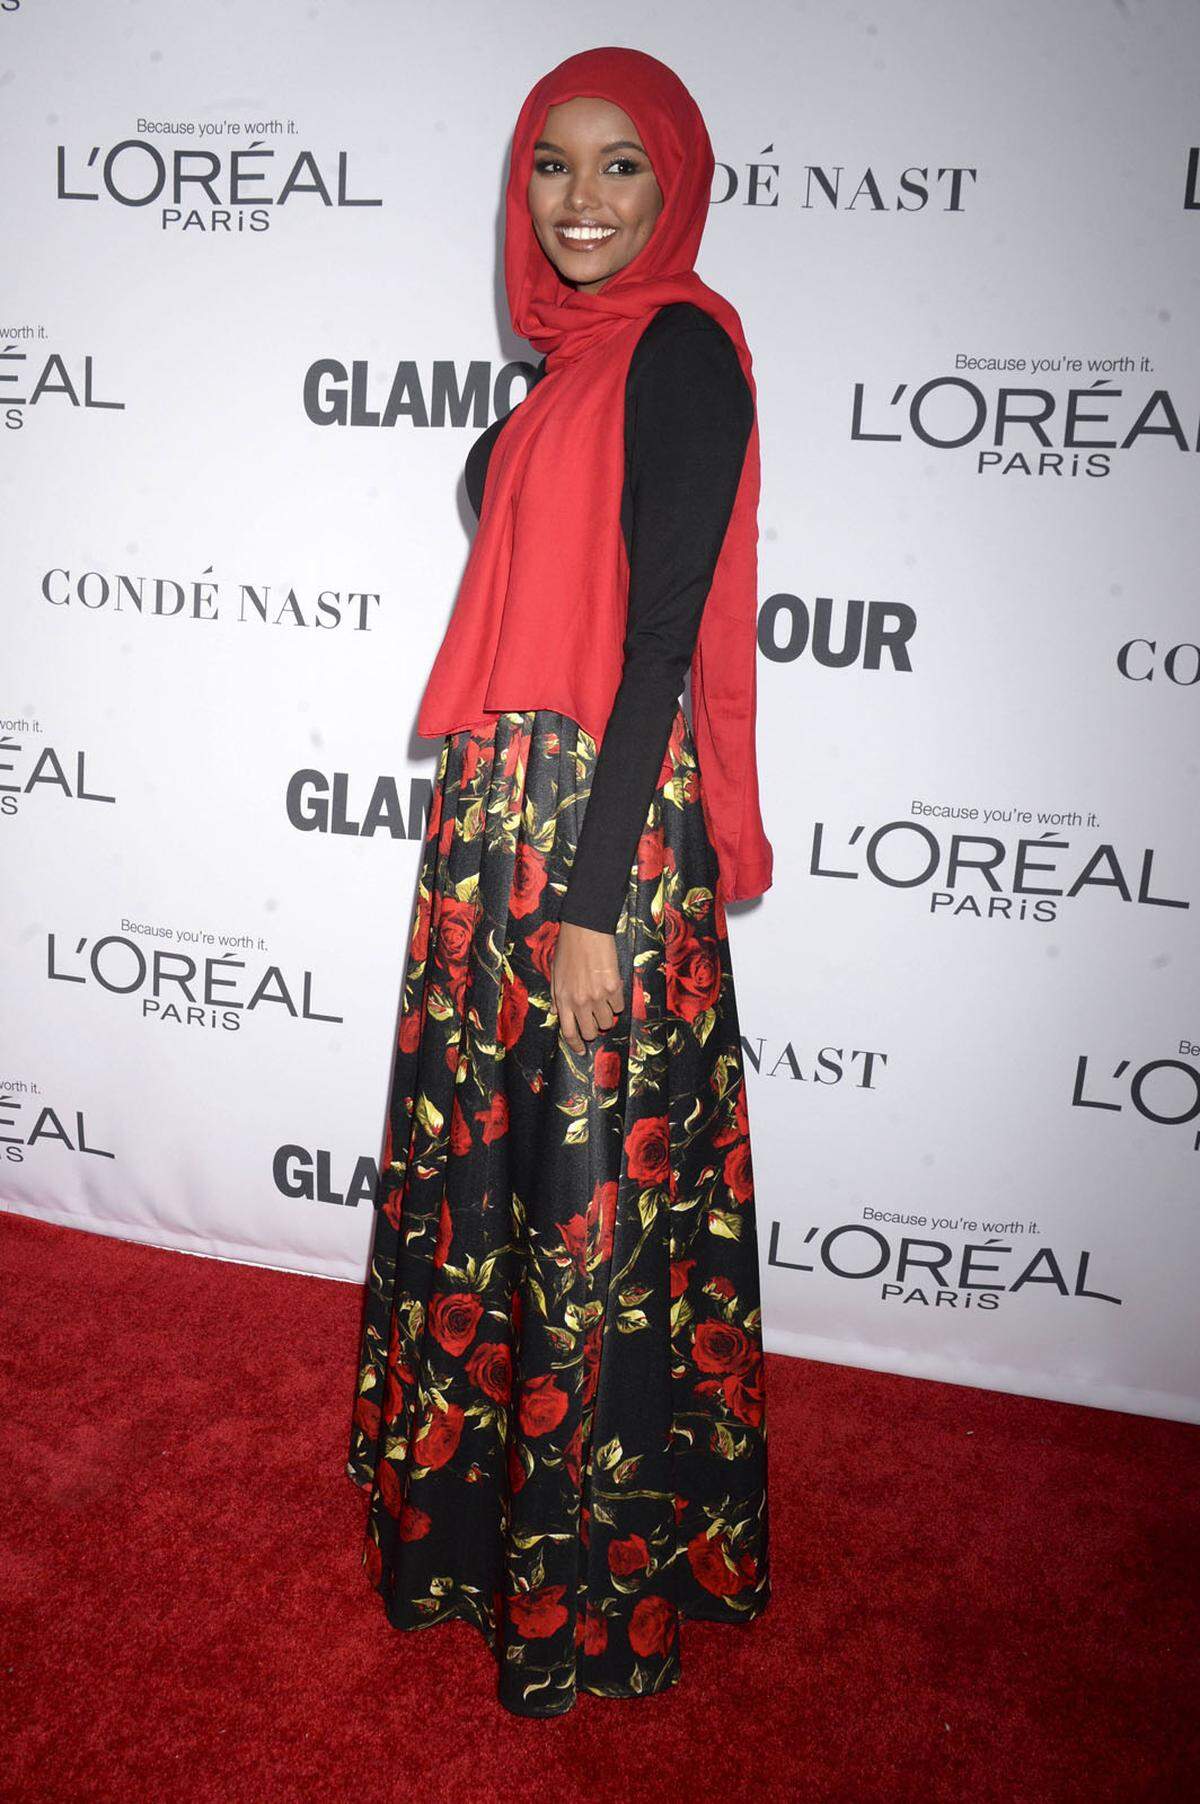 US-Amerikanerin Halima Aden ebnete in diesem Jahr für Models mit Kopftuch den Weg in der Modeindustrie. Aden war nicht nur auf einigen Laufstegen zu sehen, sondern kämpft auch in Magazinen und Werbungen für ein anderes Bild von Frauen mit Kopftuch. Die muslimische Zielgruppe haben aber auch Unternehmen wie Nike für sich entdeckt. Seit kurzem gibt es etwa einen Sport-Hidschab für muslimische Sportlerinnen.